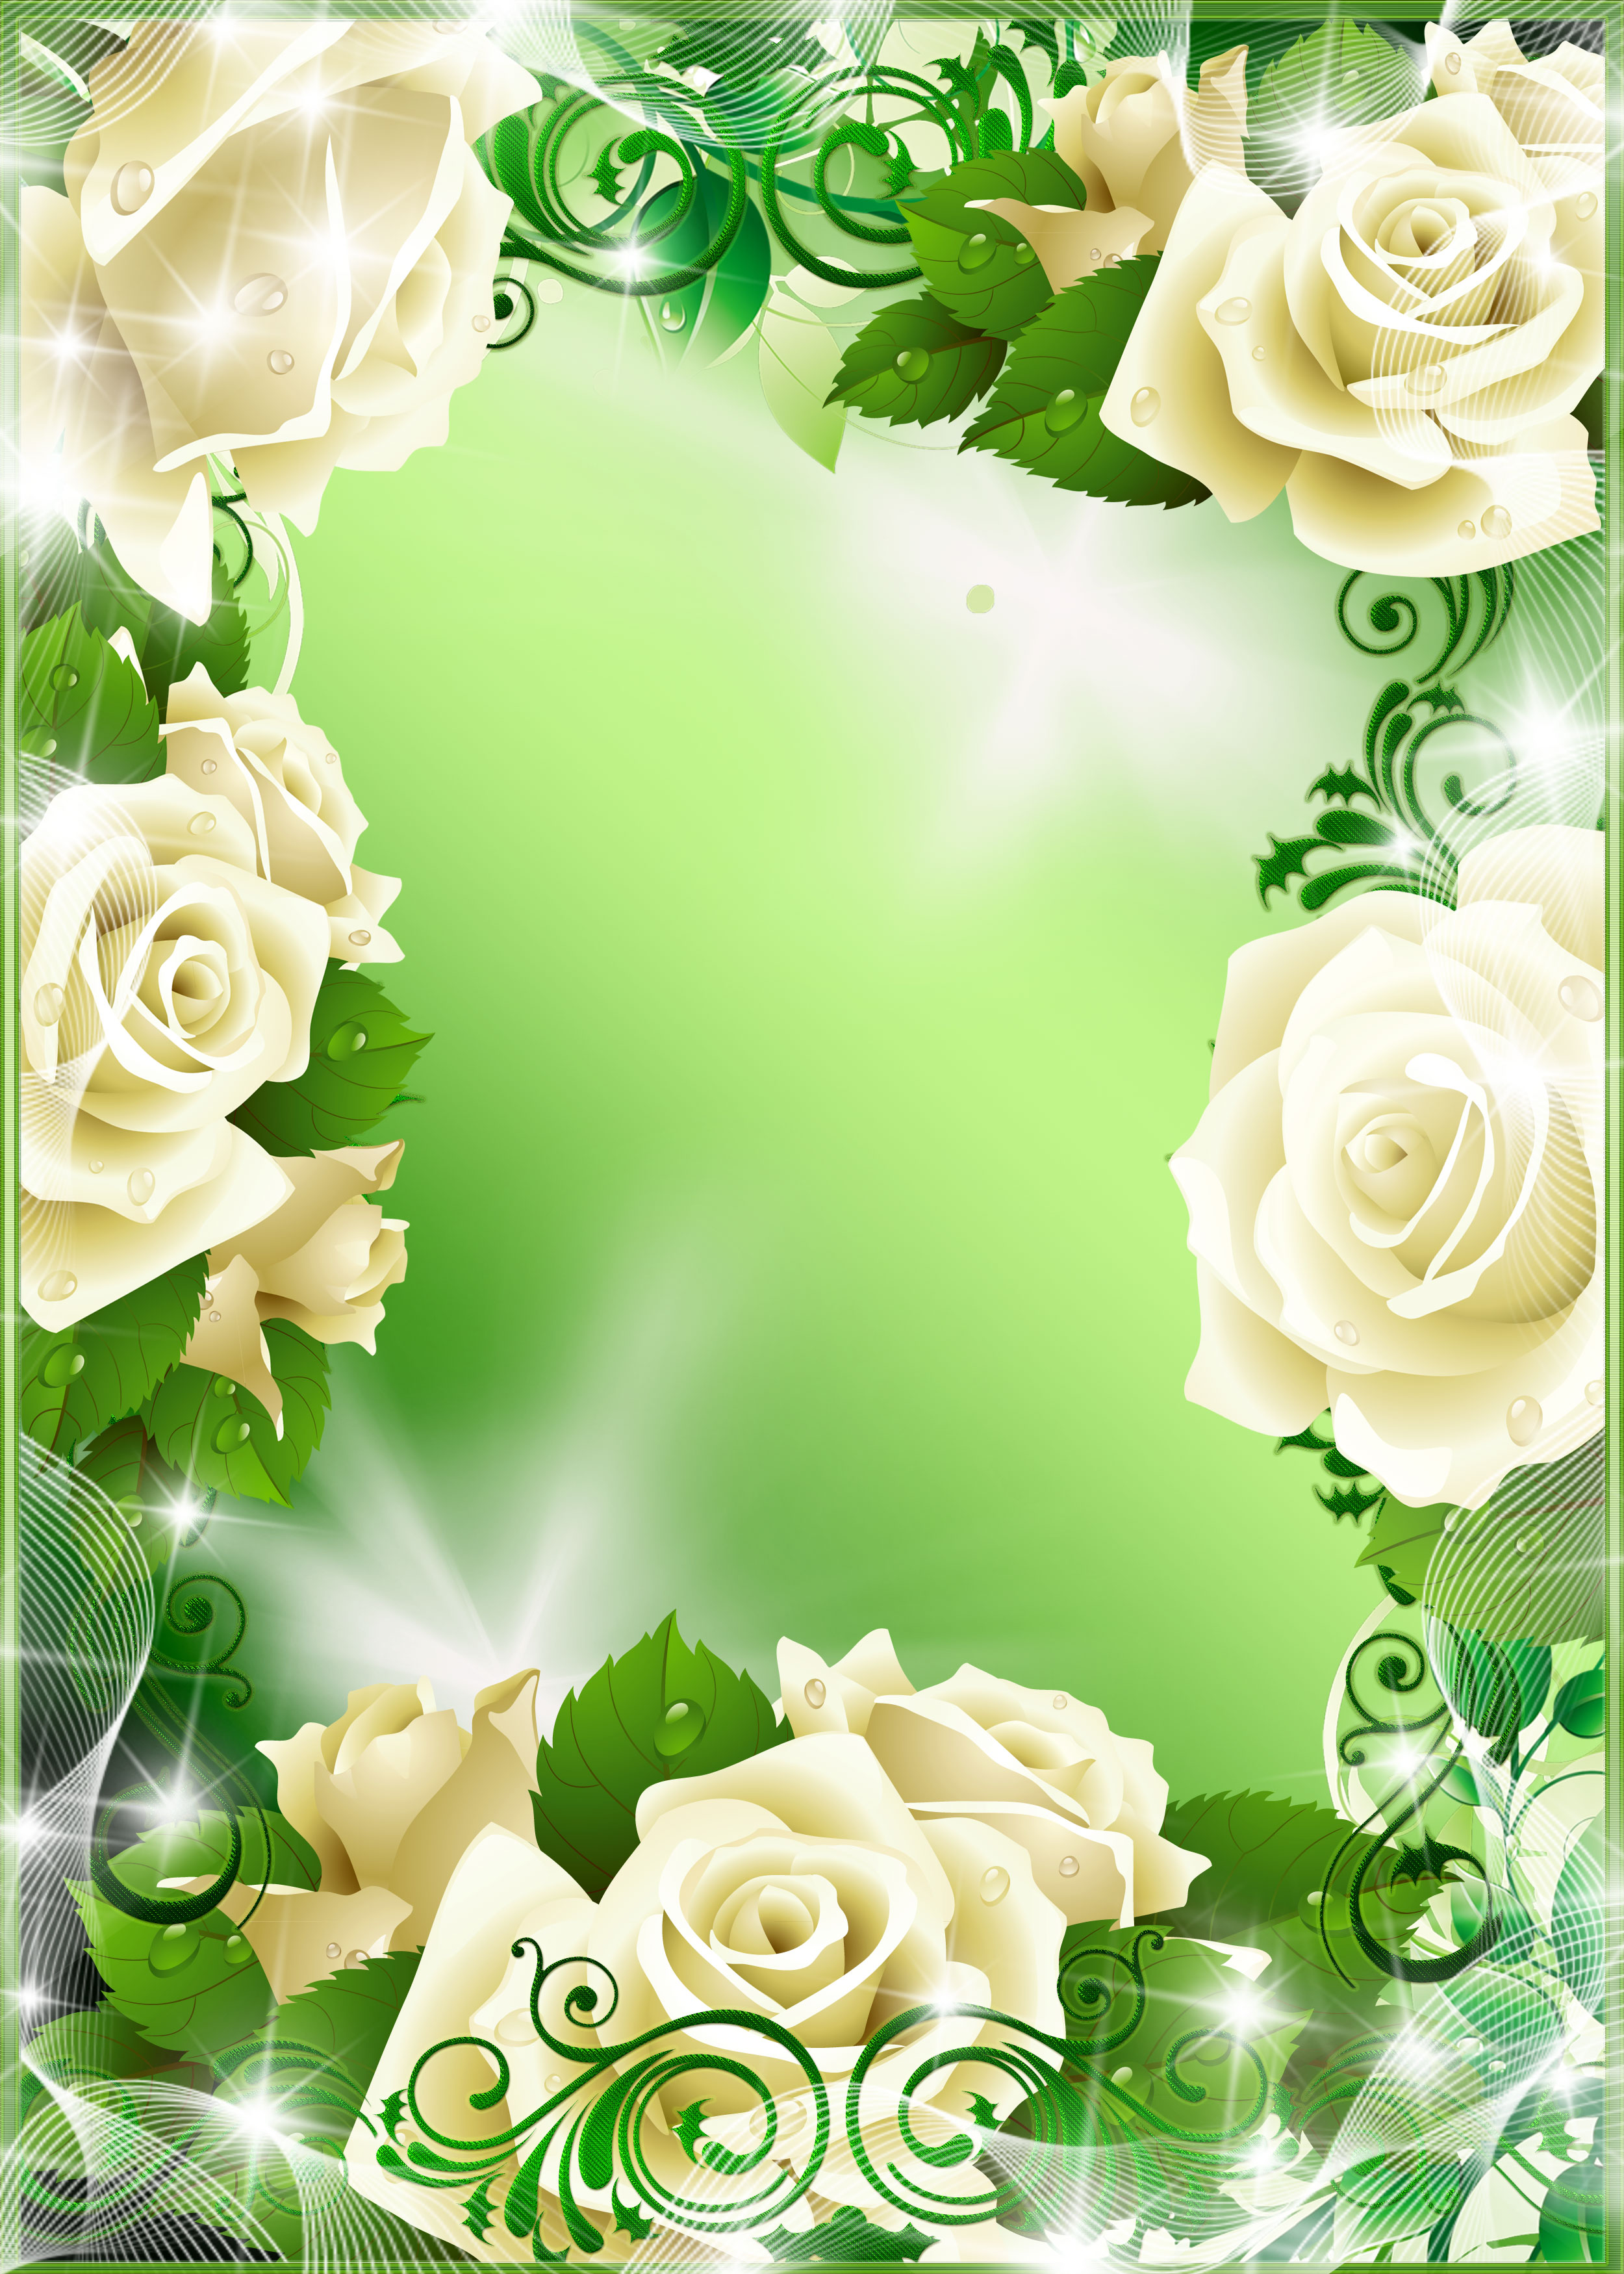 バラの画像 イラスト 壁紙 背景用 No 605 白バラ 光彩 緑